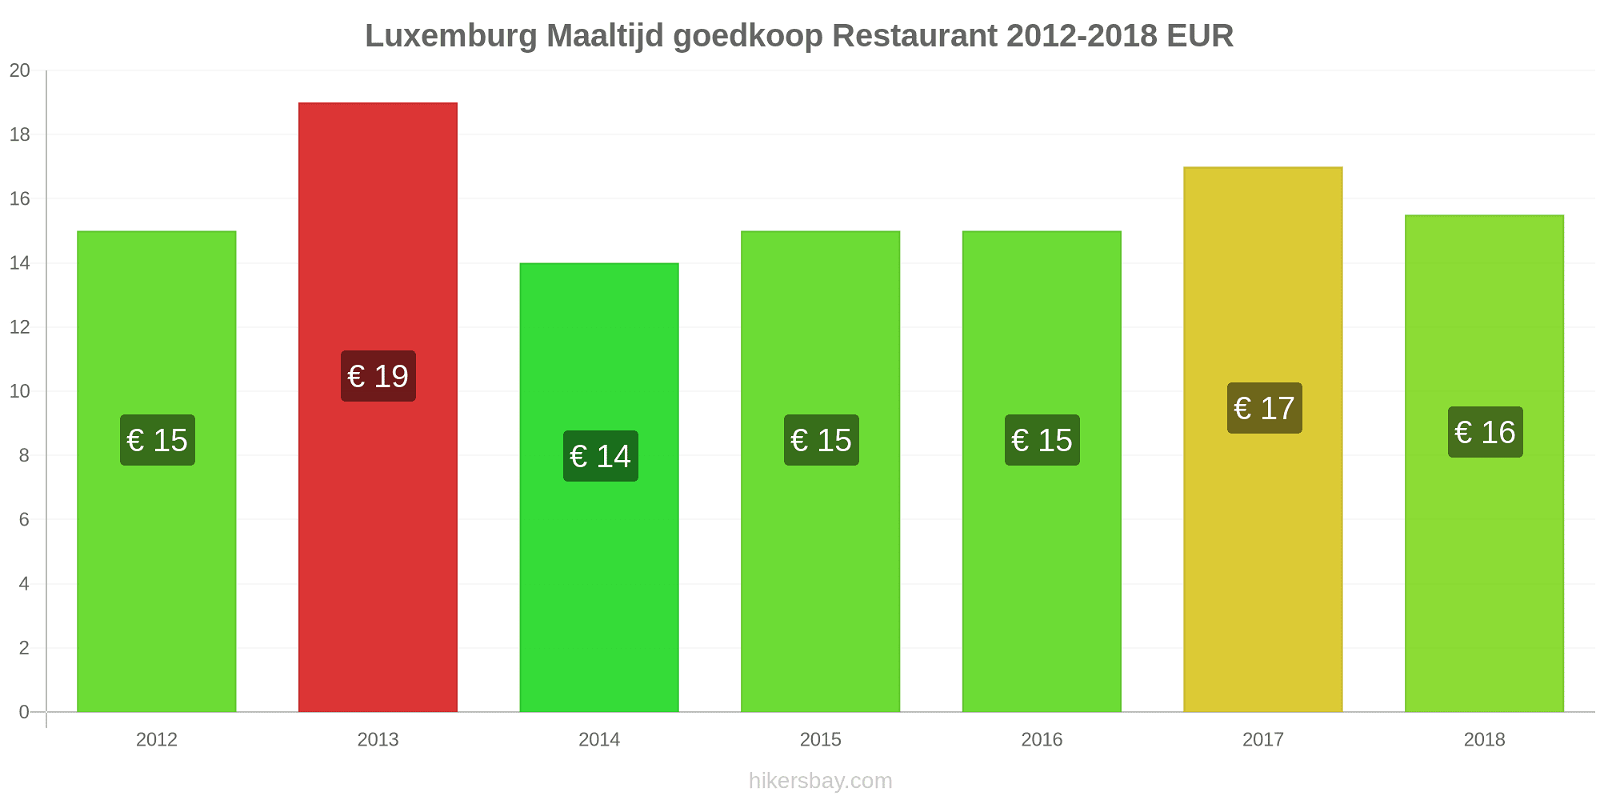 Luxemburg prijswijzigingen Maaltijd in een goedkoop restaurant hikersbay.com